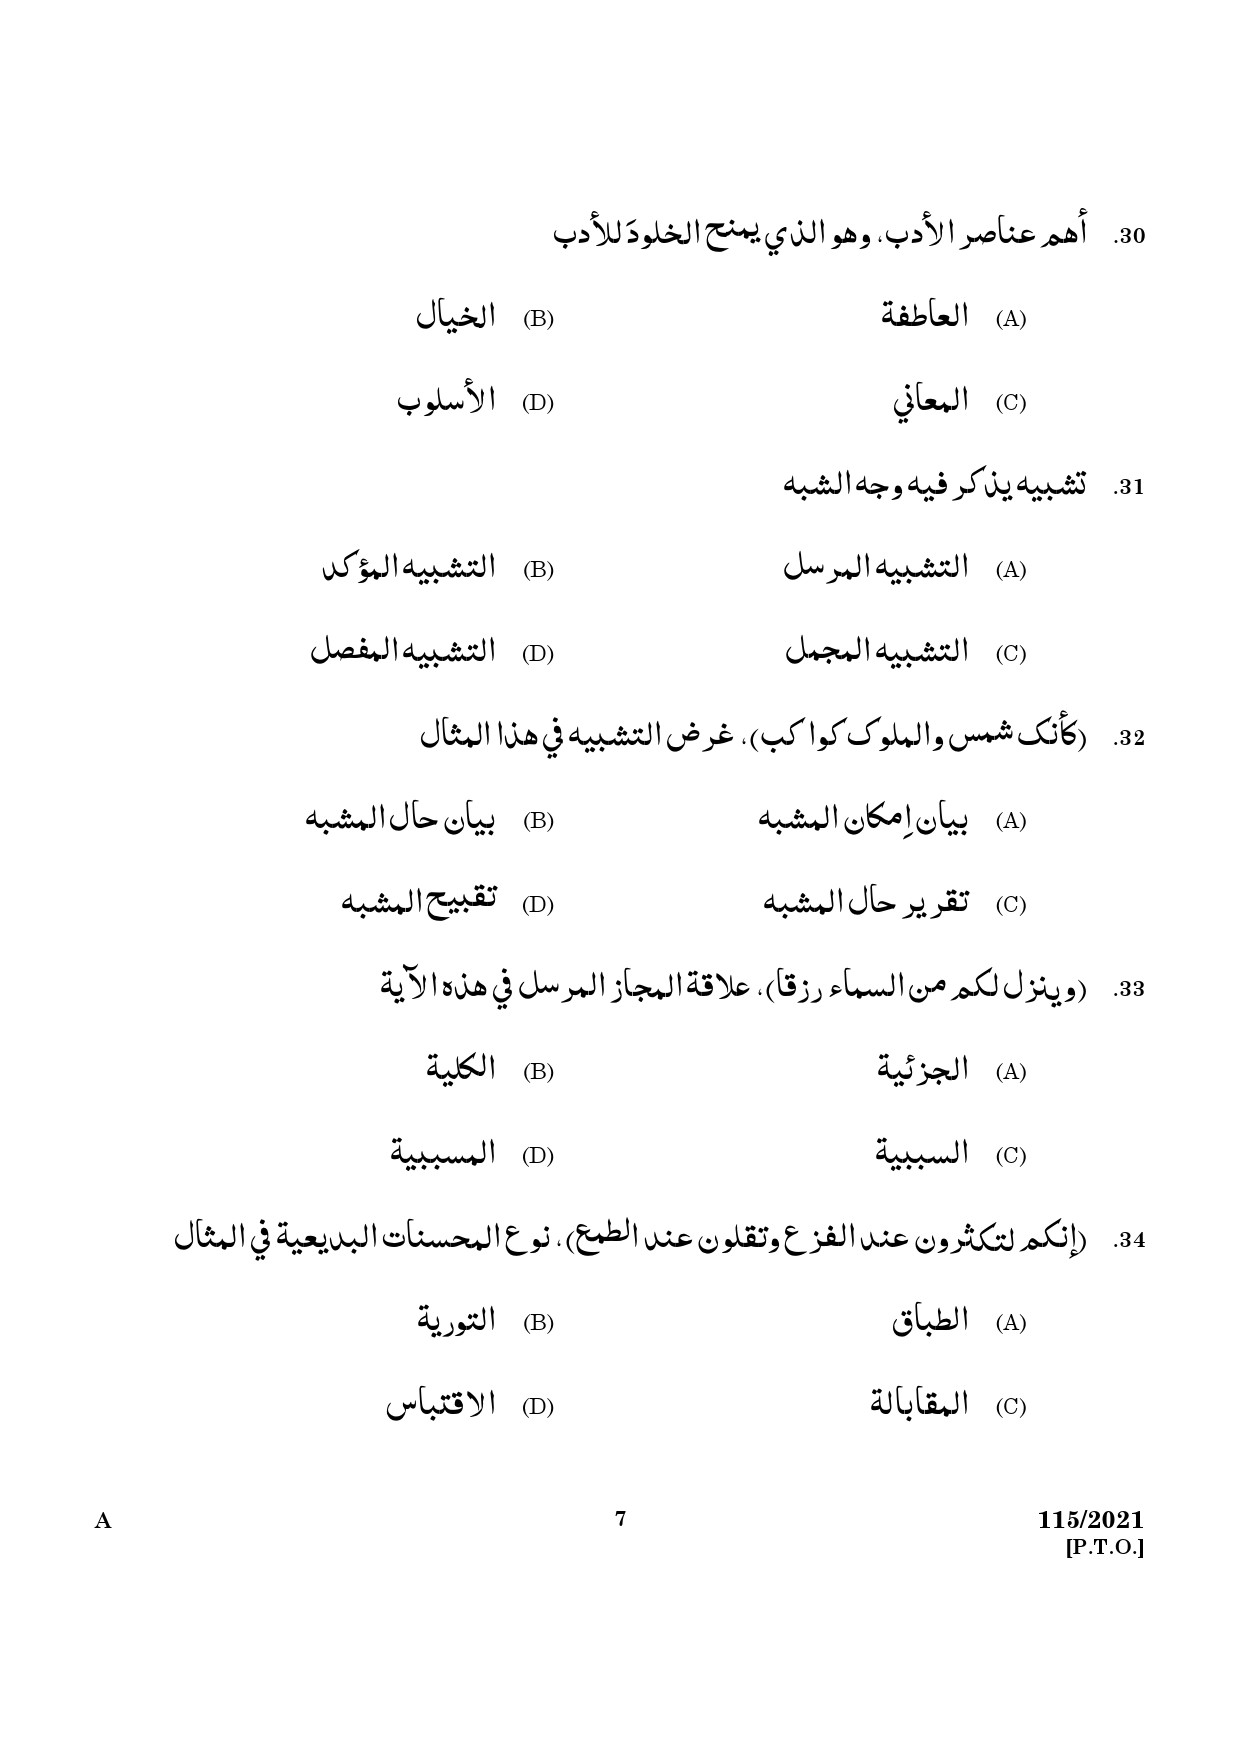 KPSC Part Time Junior Language Teacher Arabic Exam 2021 Code 1152021 5